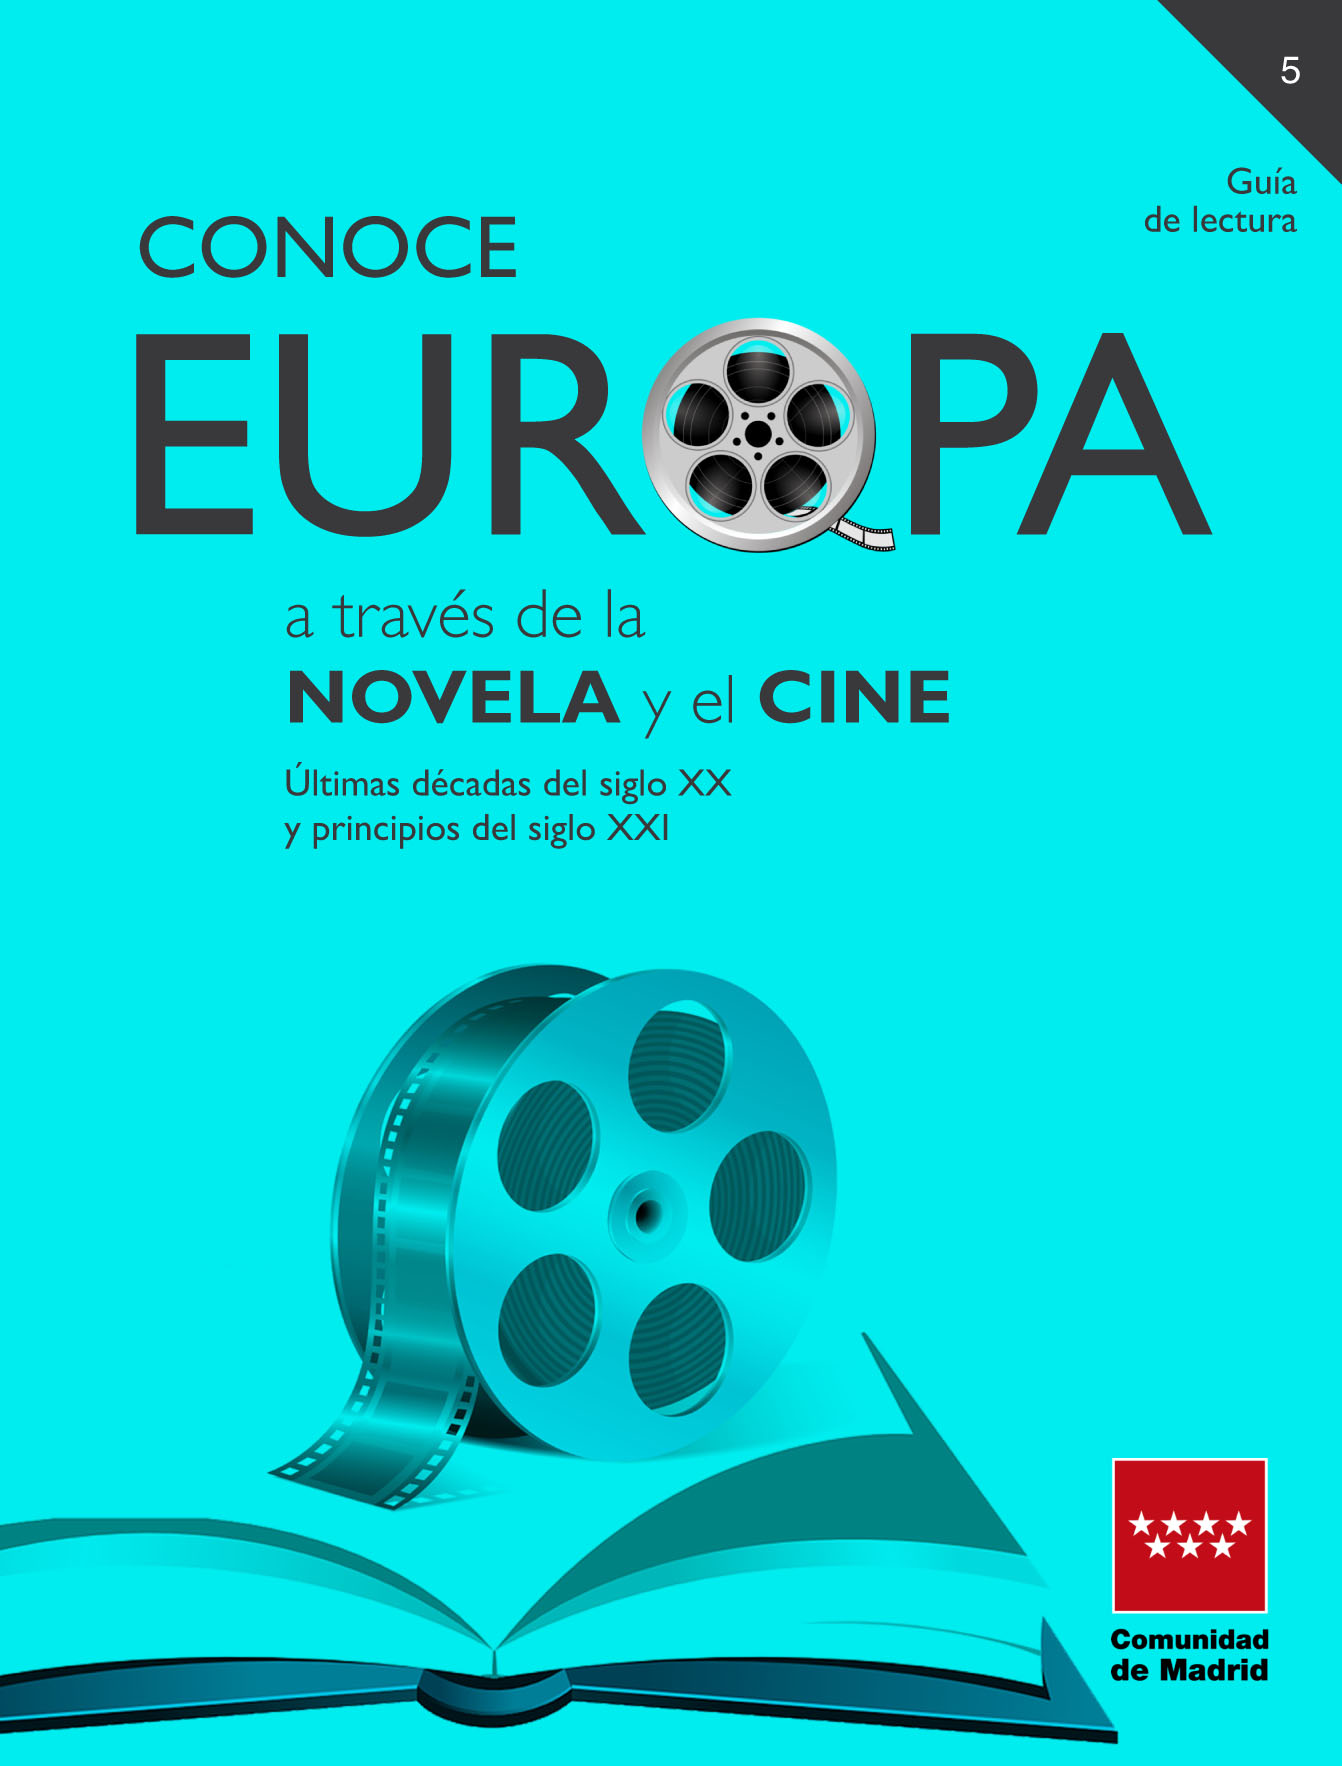 Portada de Conoce Europa a través de la novela y el cine: últimas décadas del siglo XX y principios del siglo XXI. Guia de lectura 5